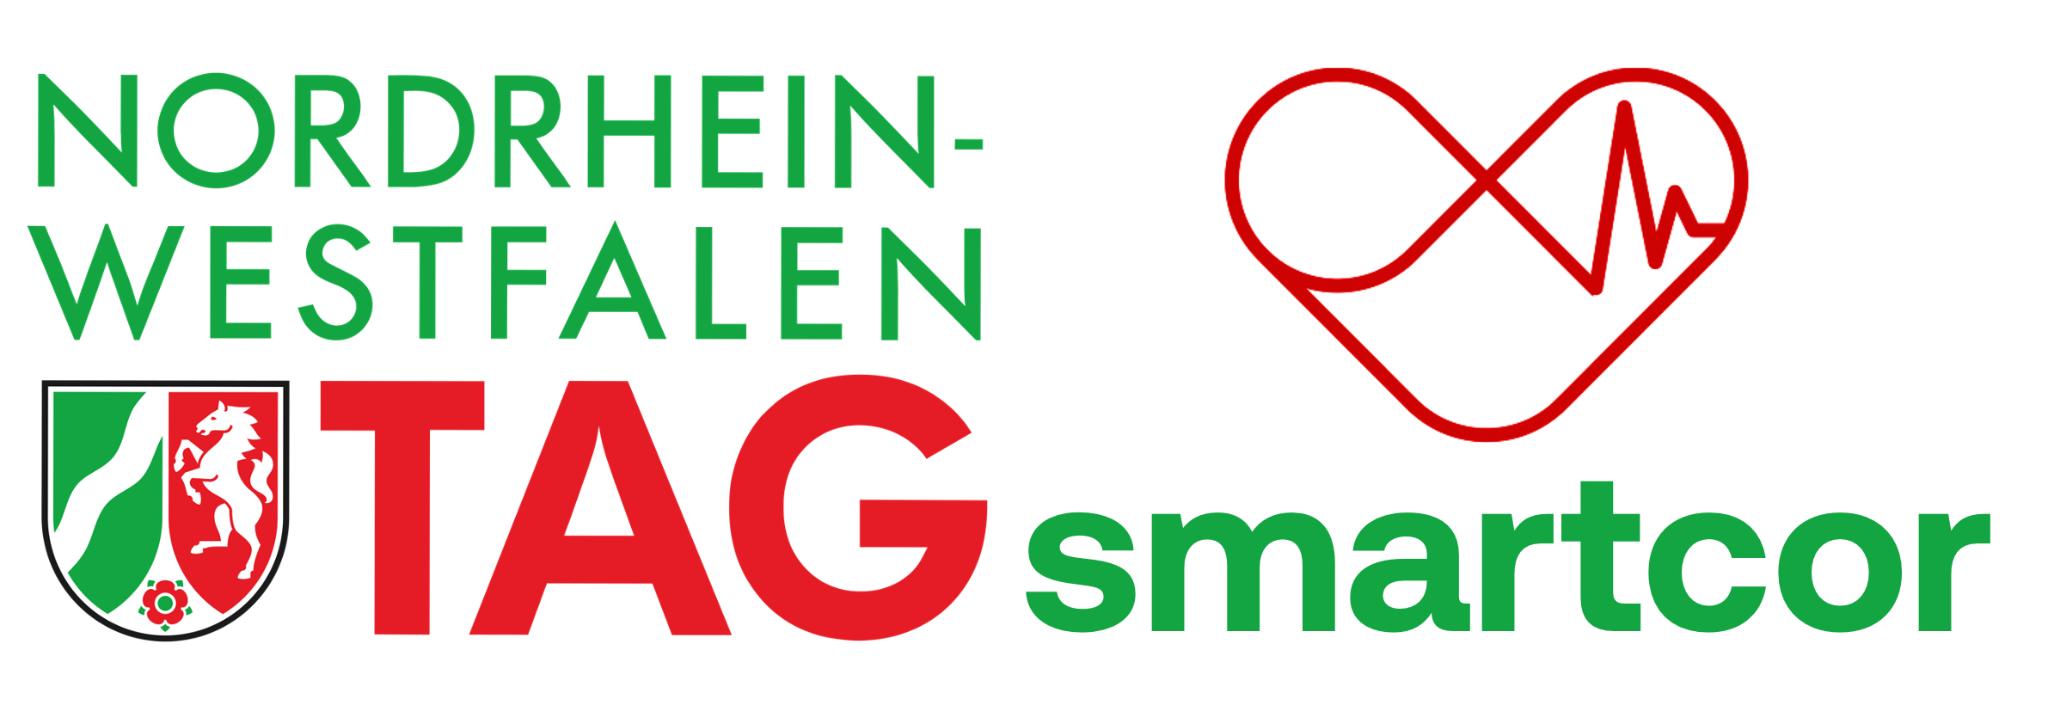 Bild für den NRW-Tag mit smartcor-Logo in rot-grün